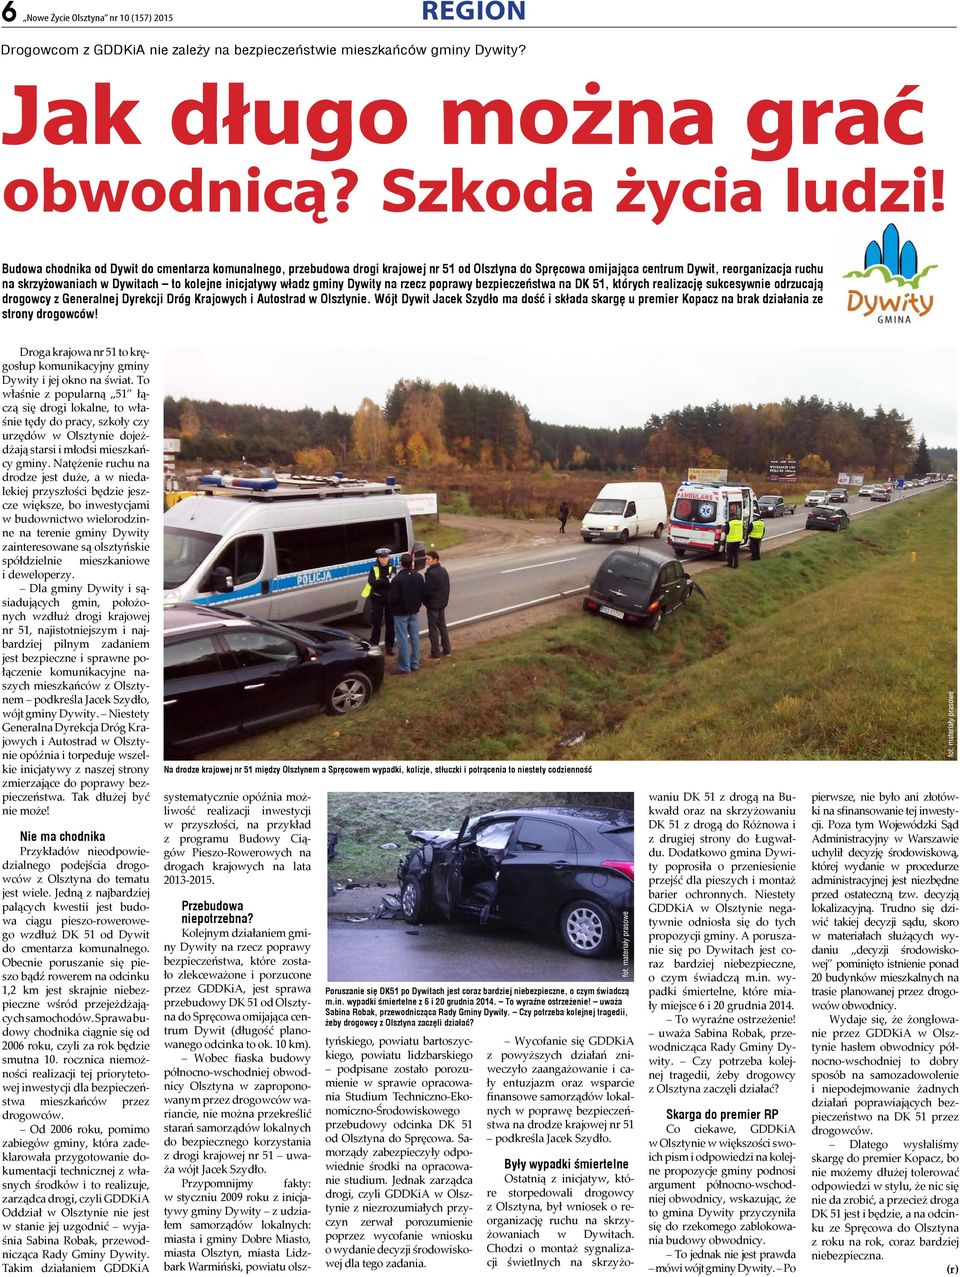 inicjatywy władz gminy Dywity na rzecz poprawy bezpieczeństwa na DK 51, których realizację sukcesywnie odrzucają drogowcy z Generalnej Dyrekcji Dróg Krajowych i Autostrad w Olsztynie.